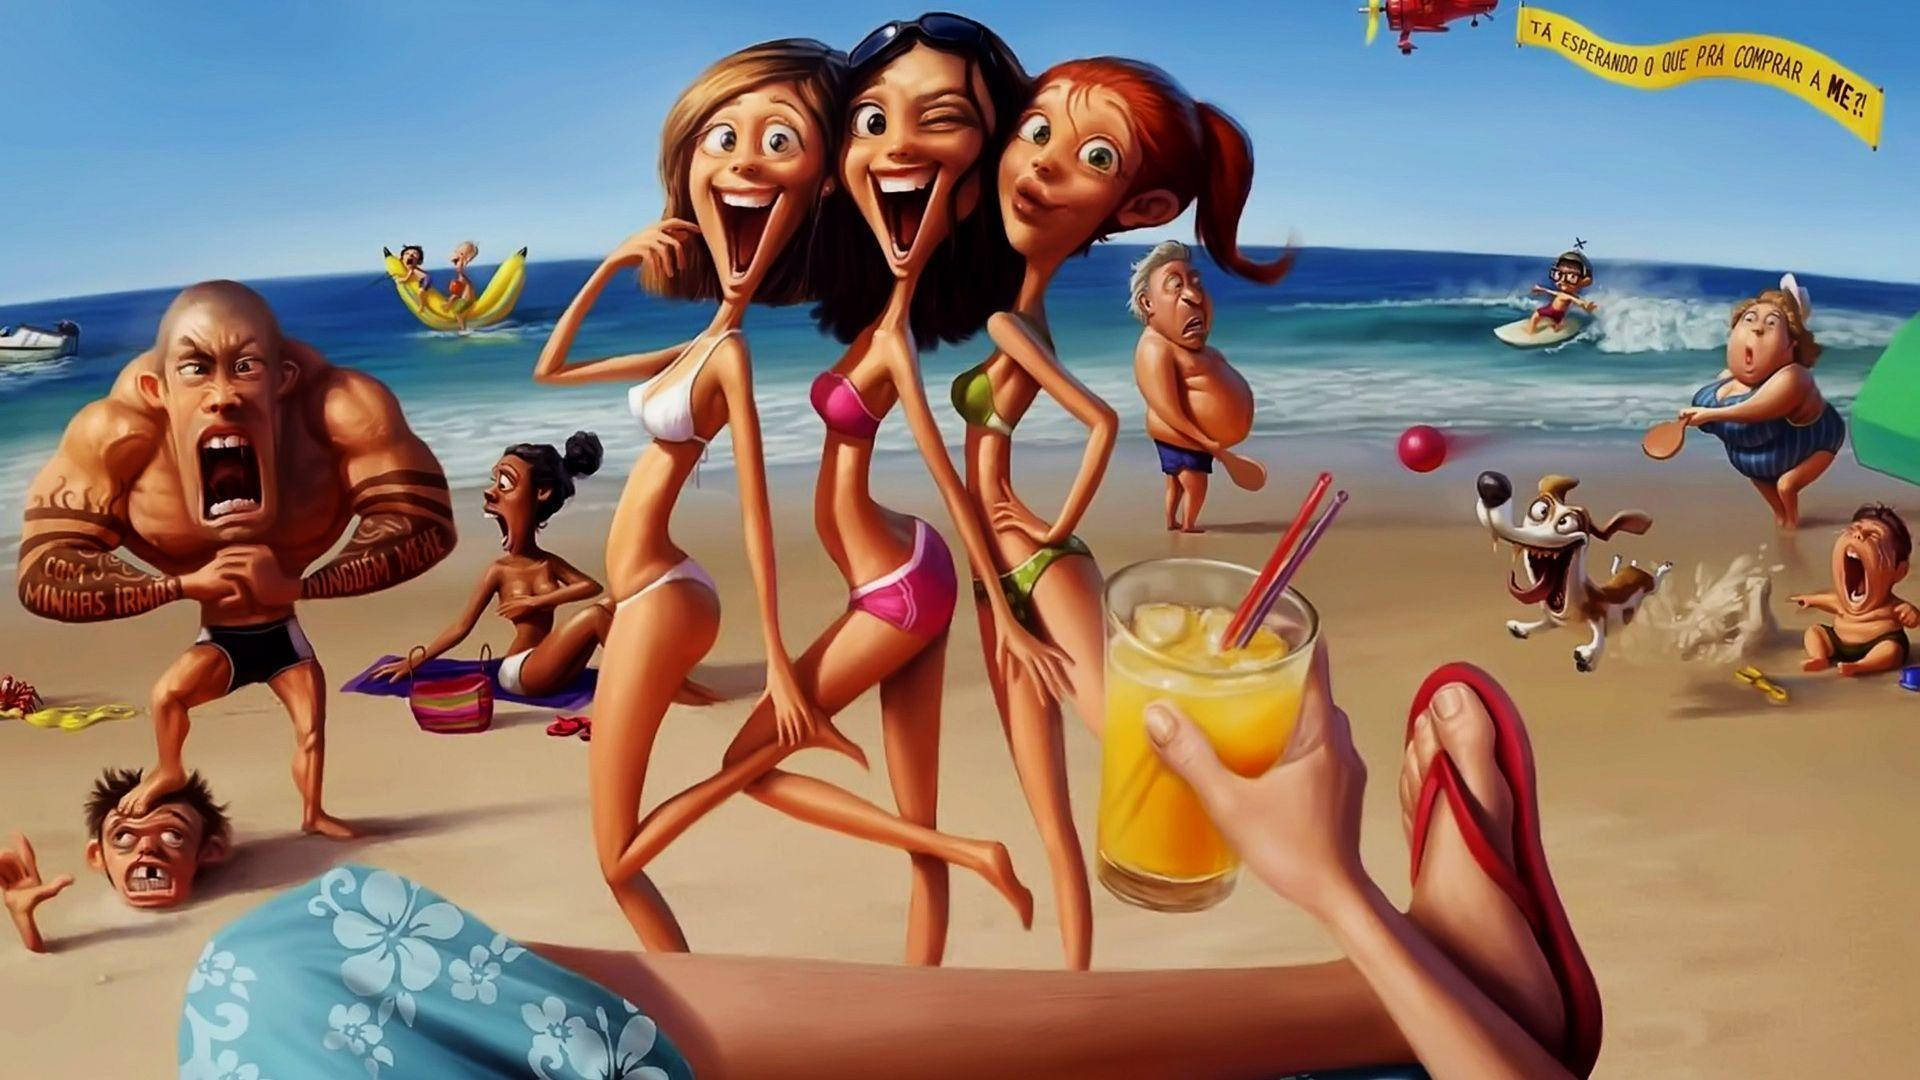 Cartoons Girls On The Beach Side Wallpaper